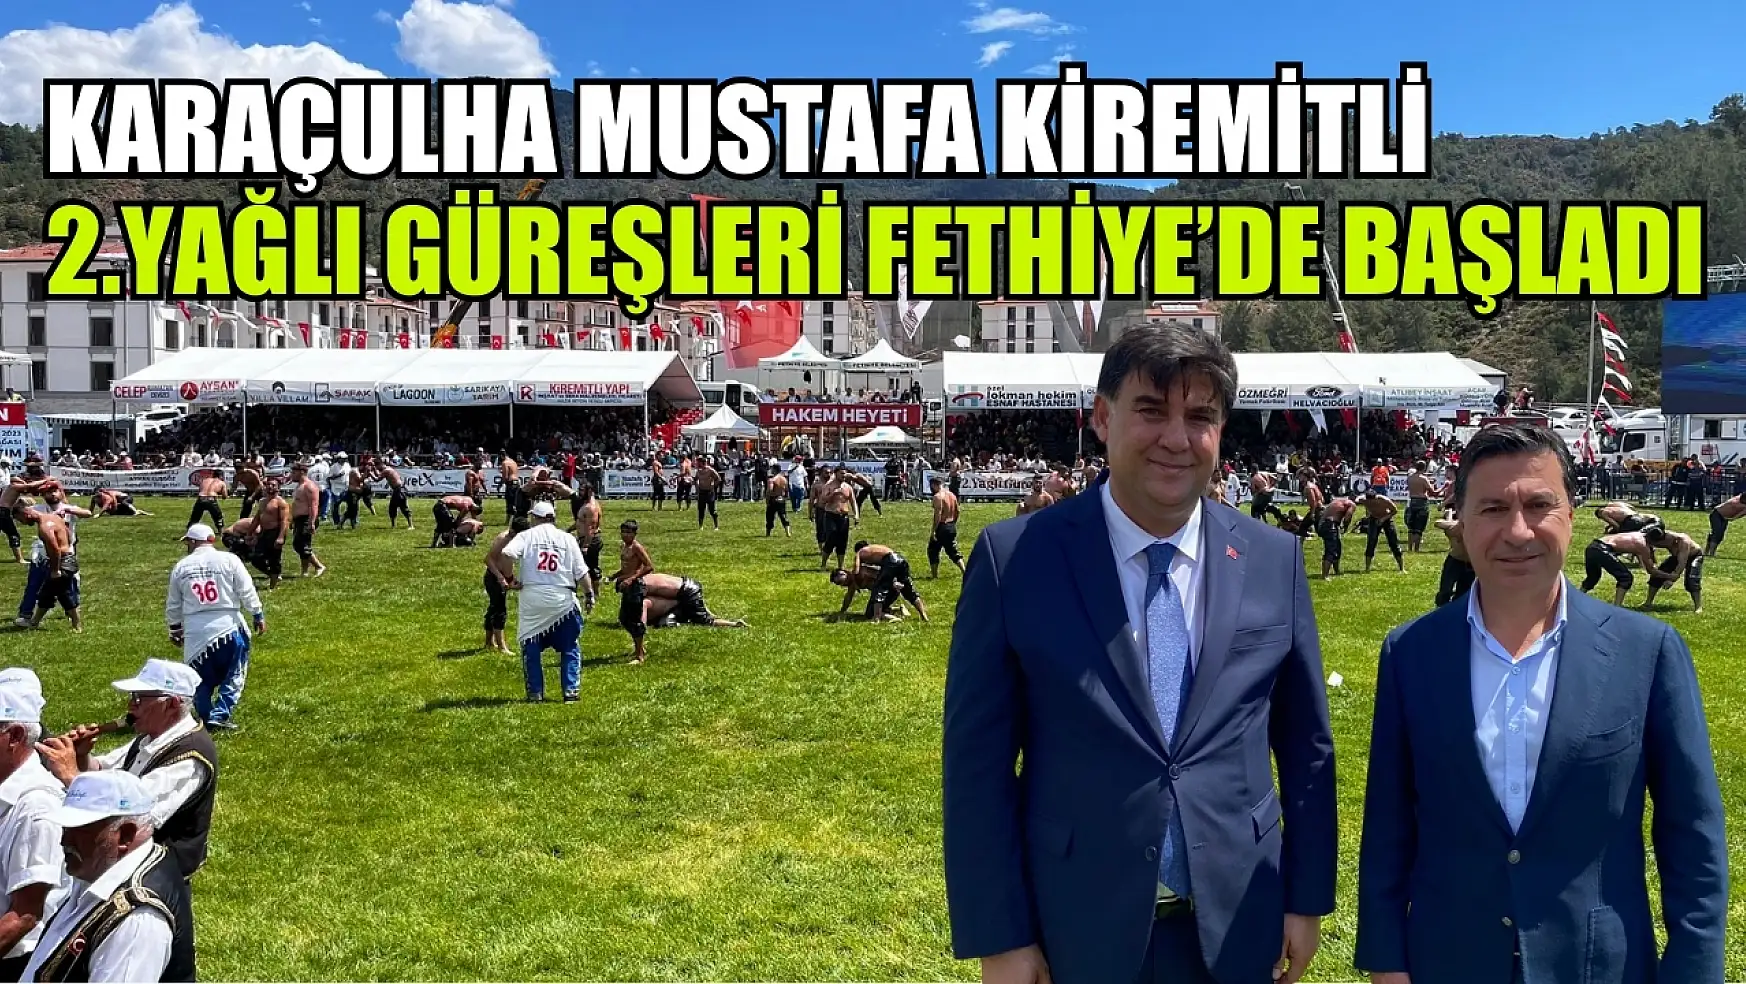 Karaçulha Mustafa Kiremitli 2.Yağlı Güreşleri Fethiye'de Başladı